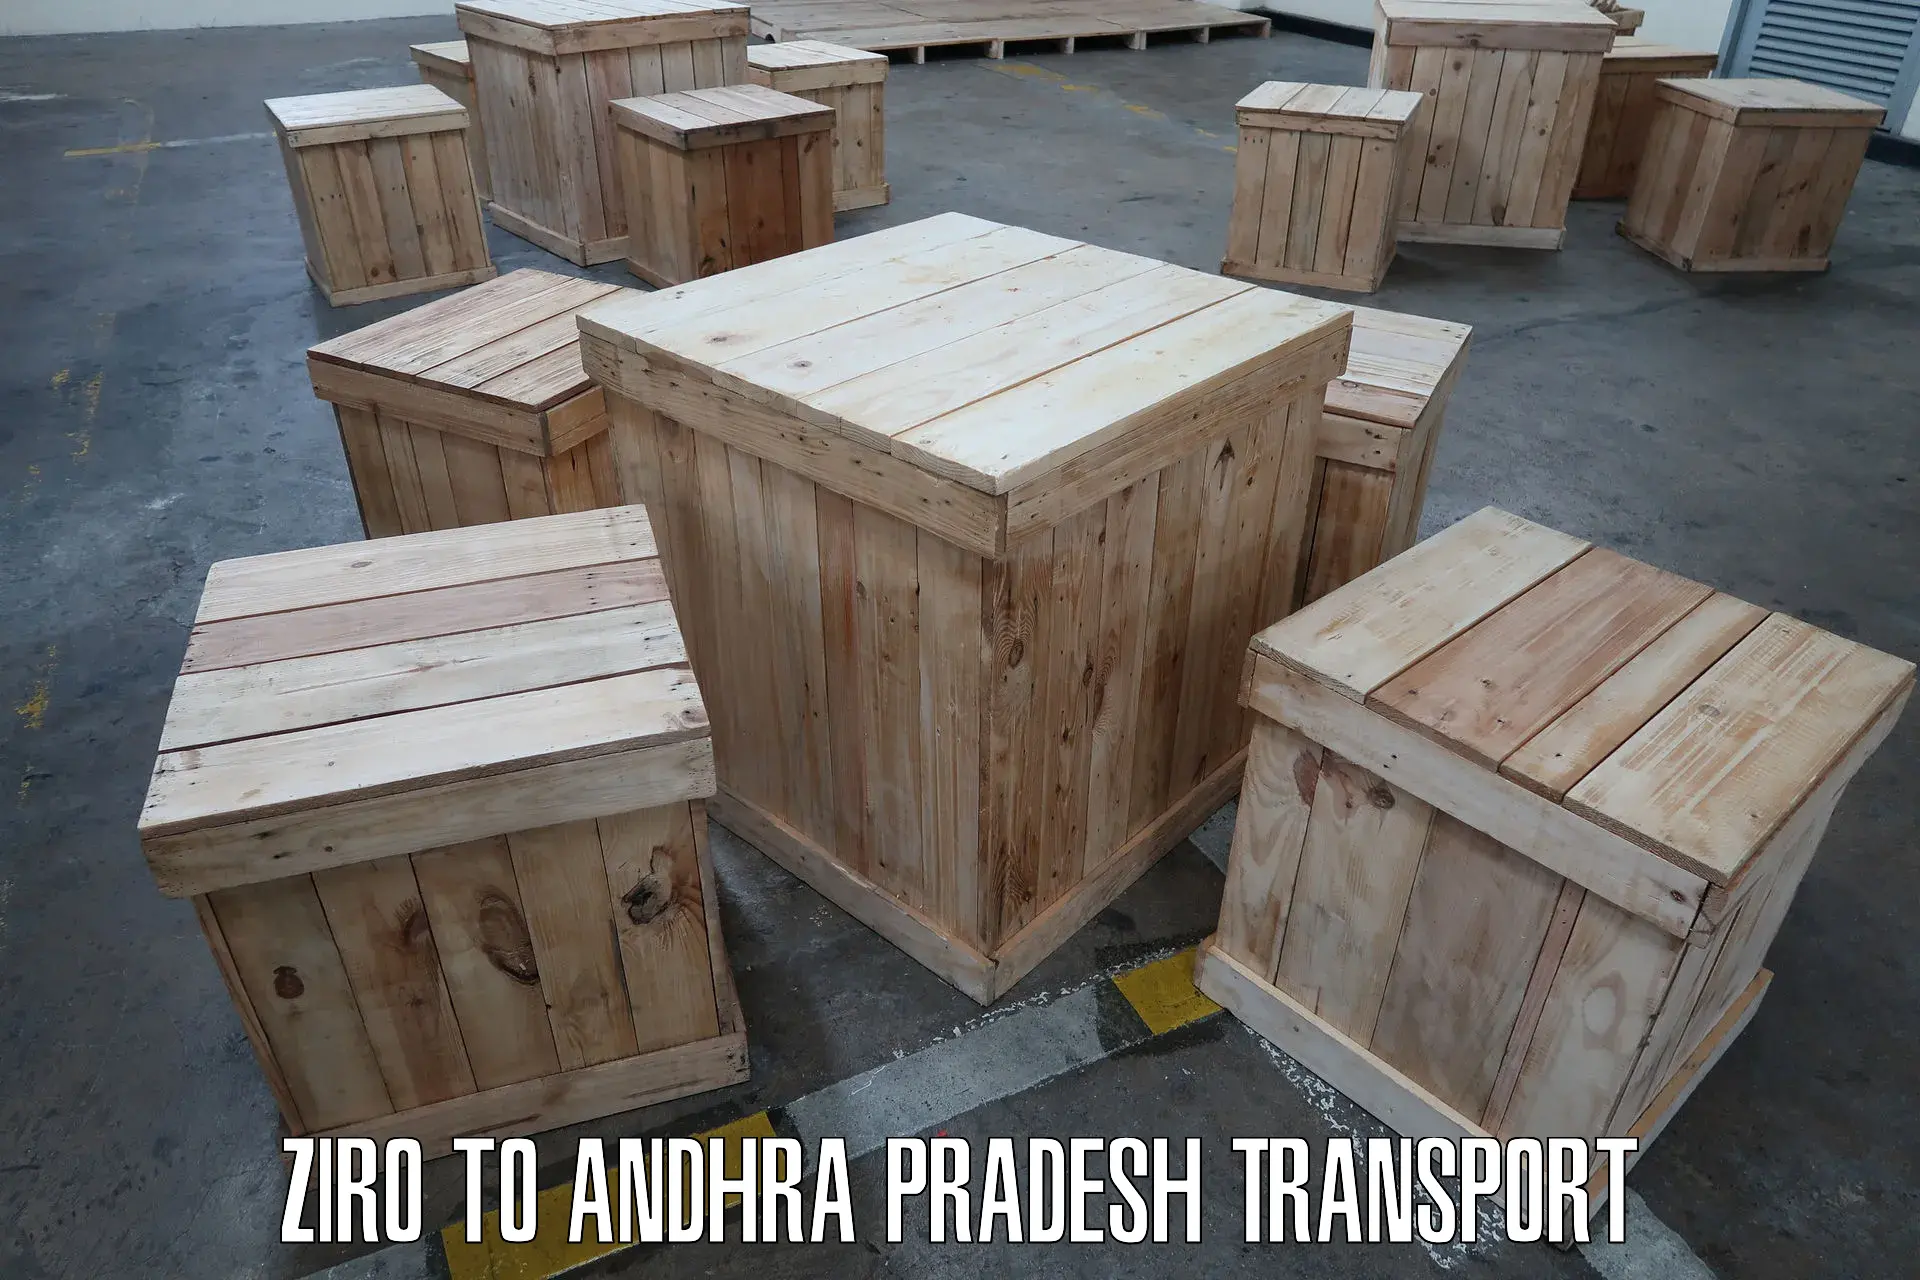 Container transport service Ziro to Ramachandrapuram